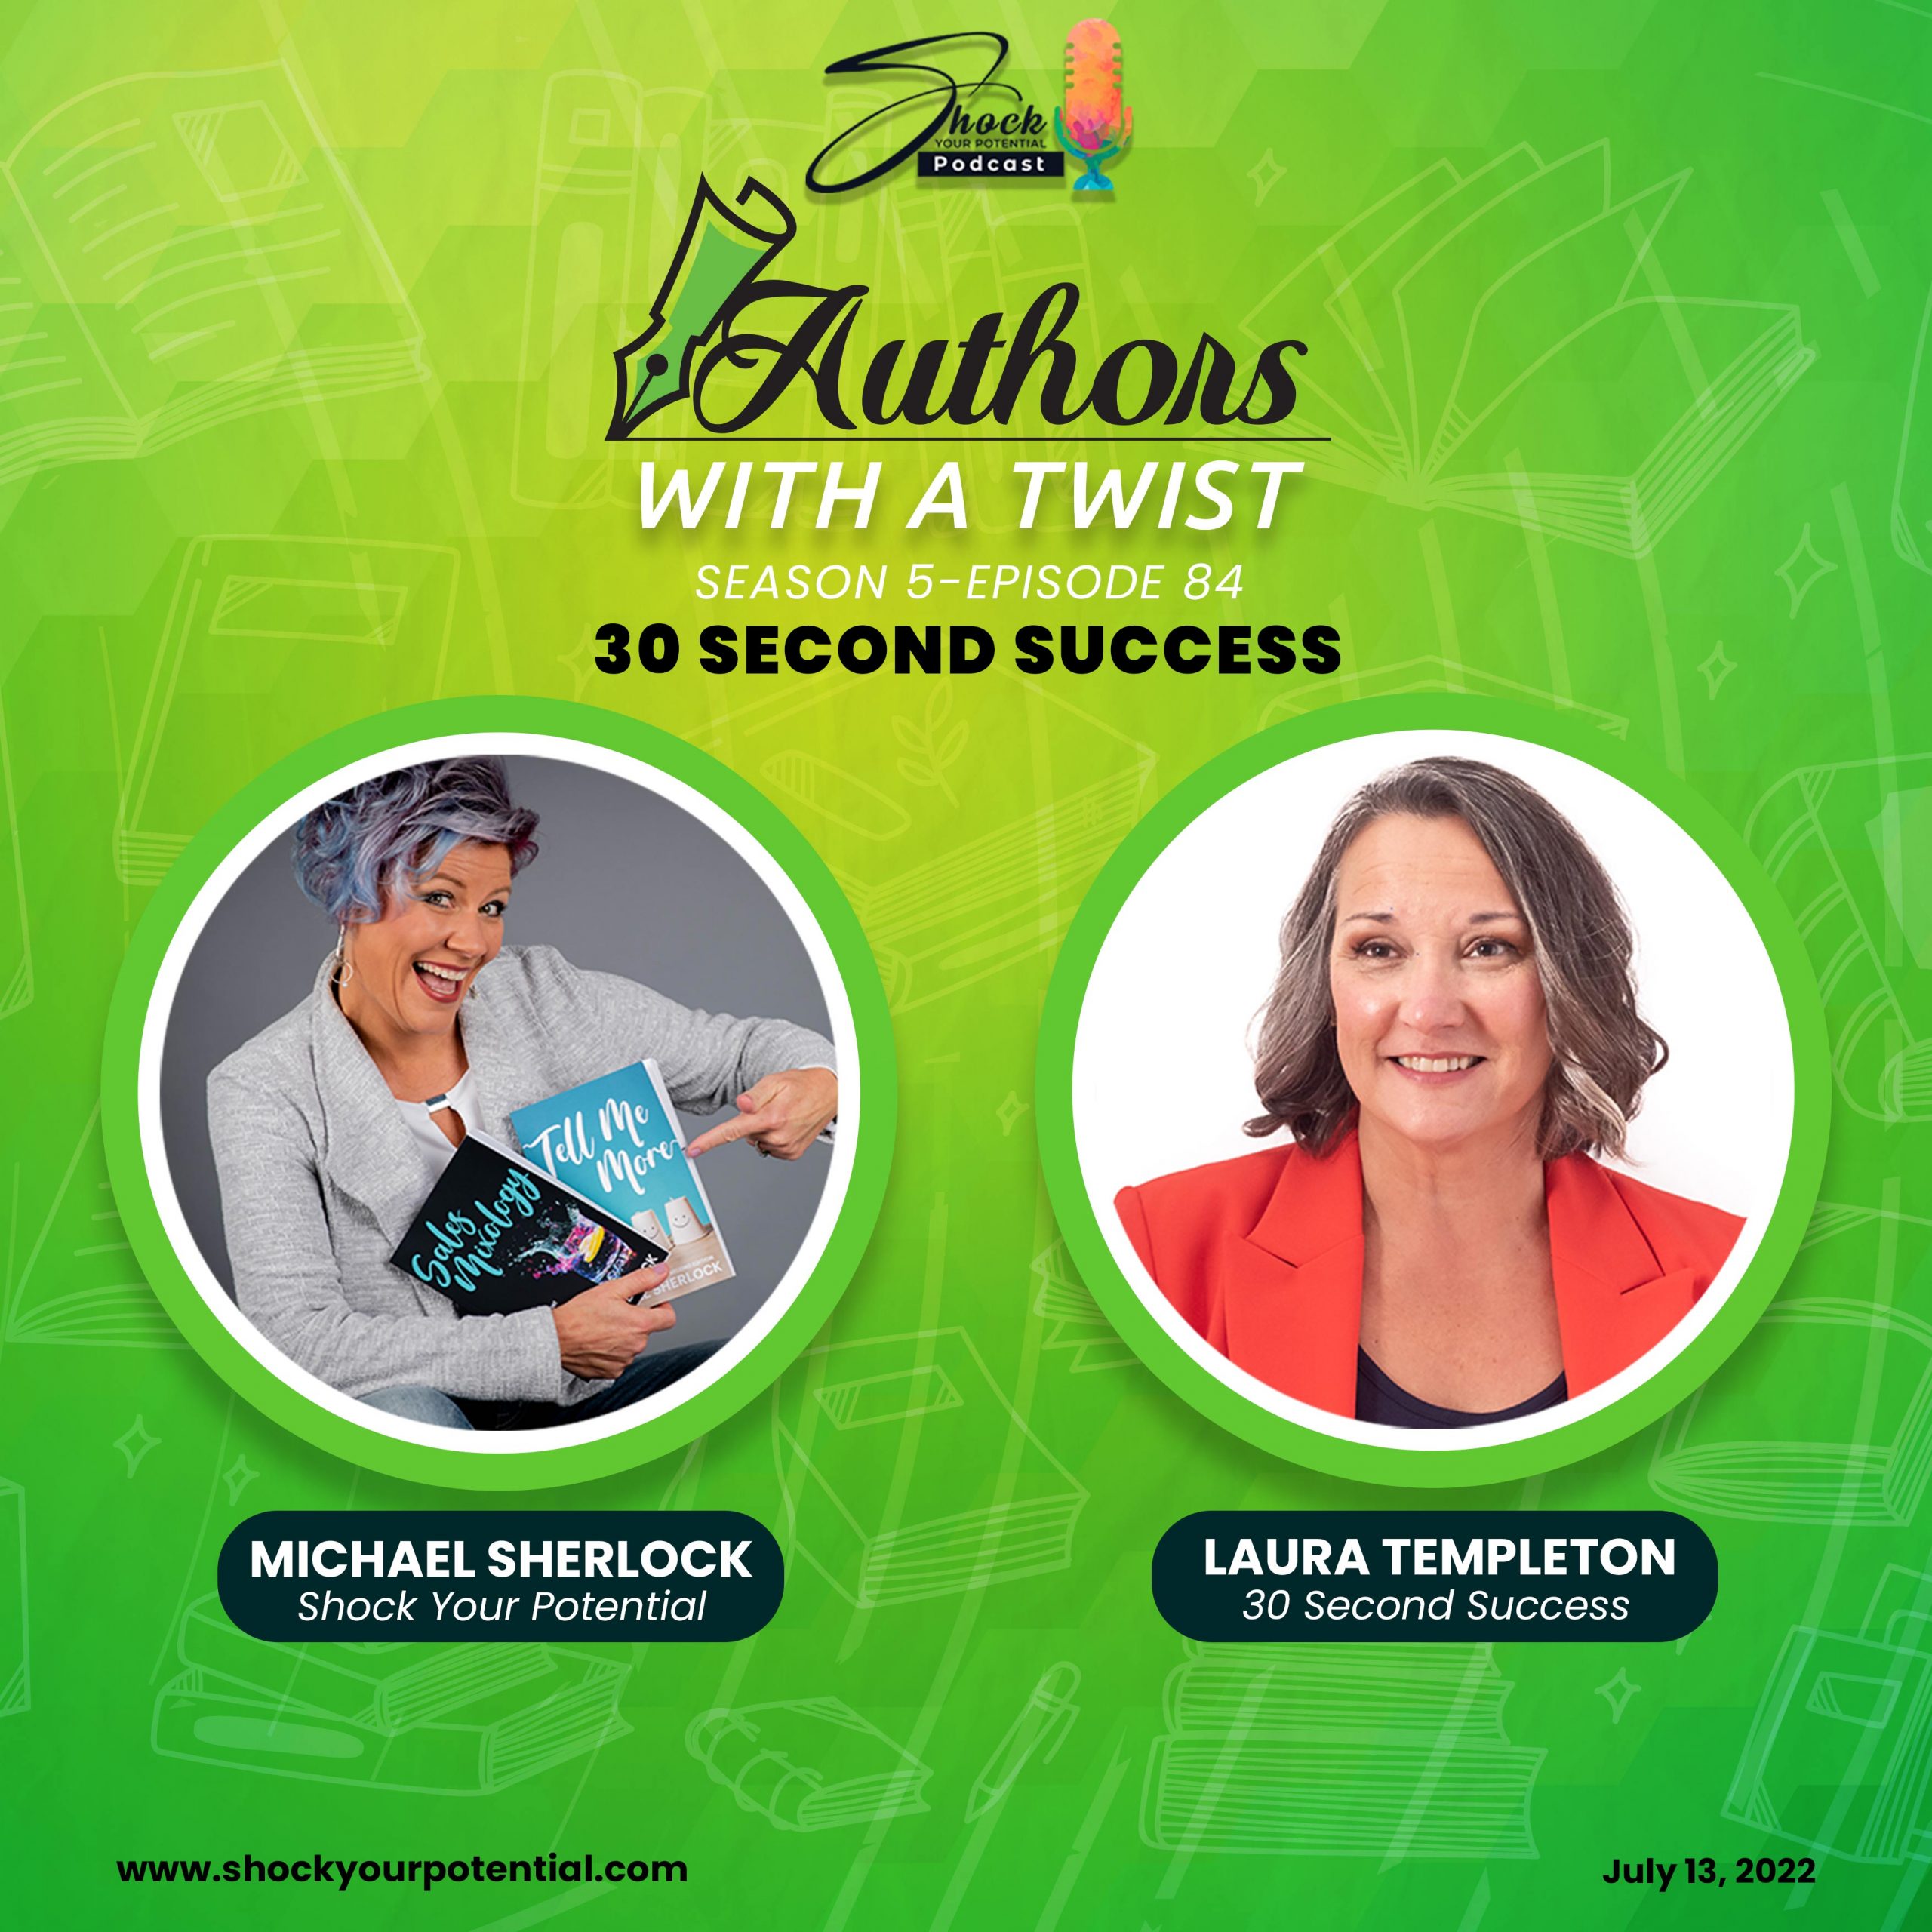 30 Second Success – Laura Templeton